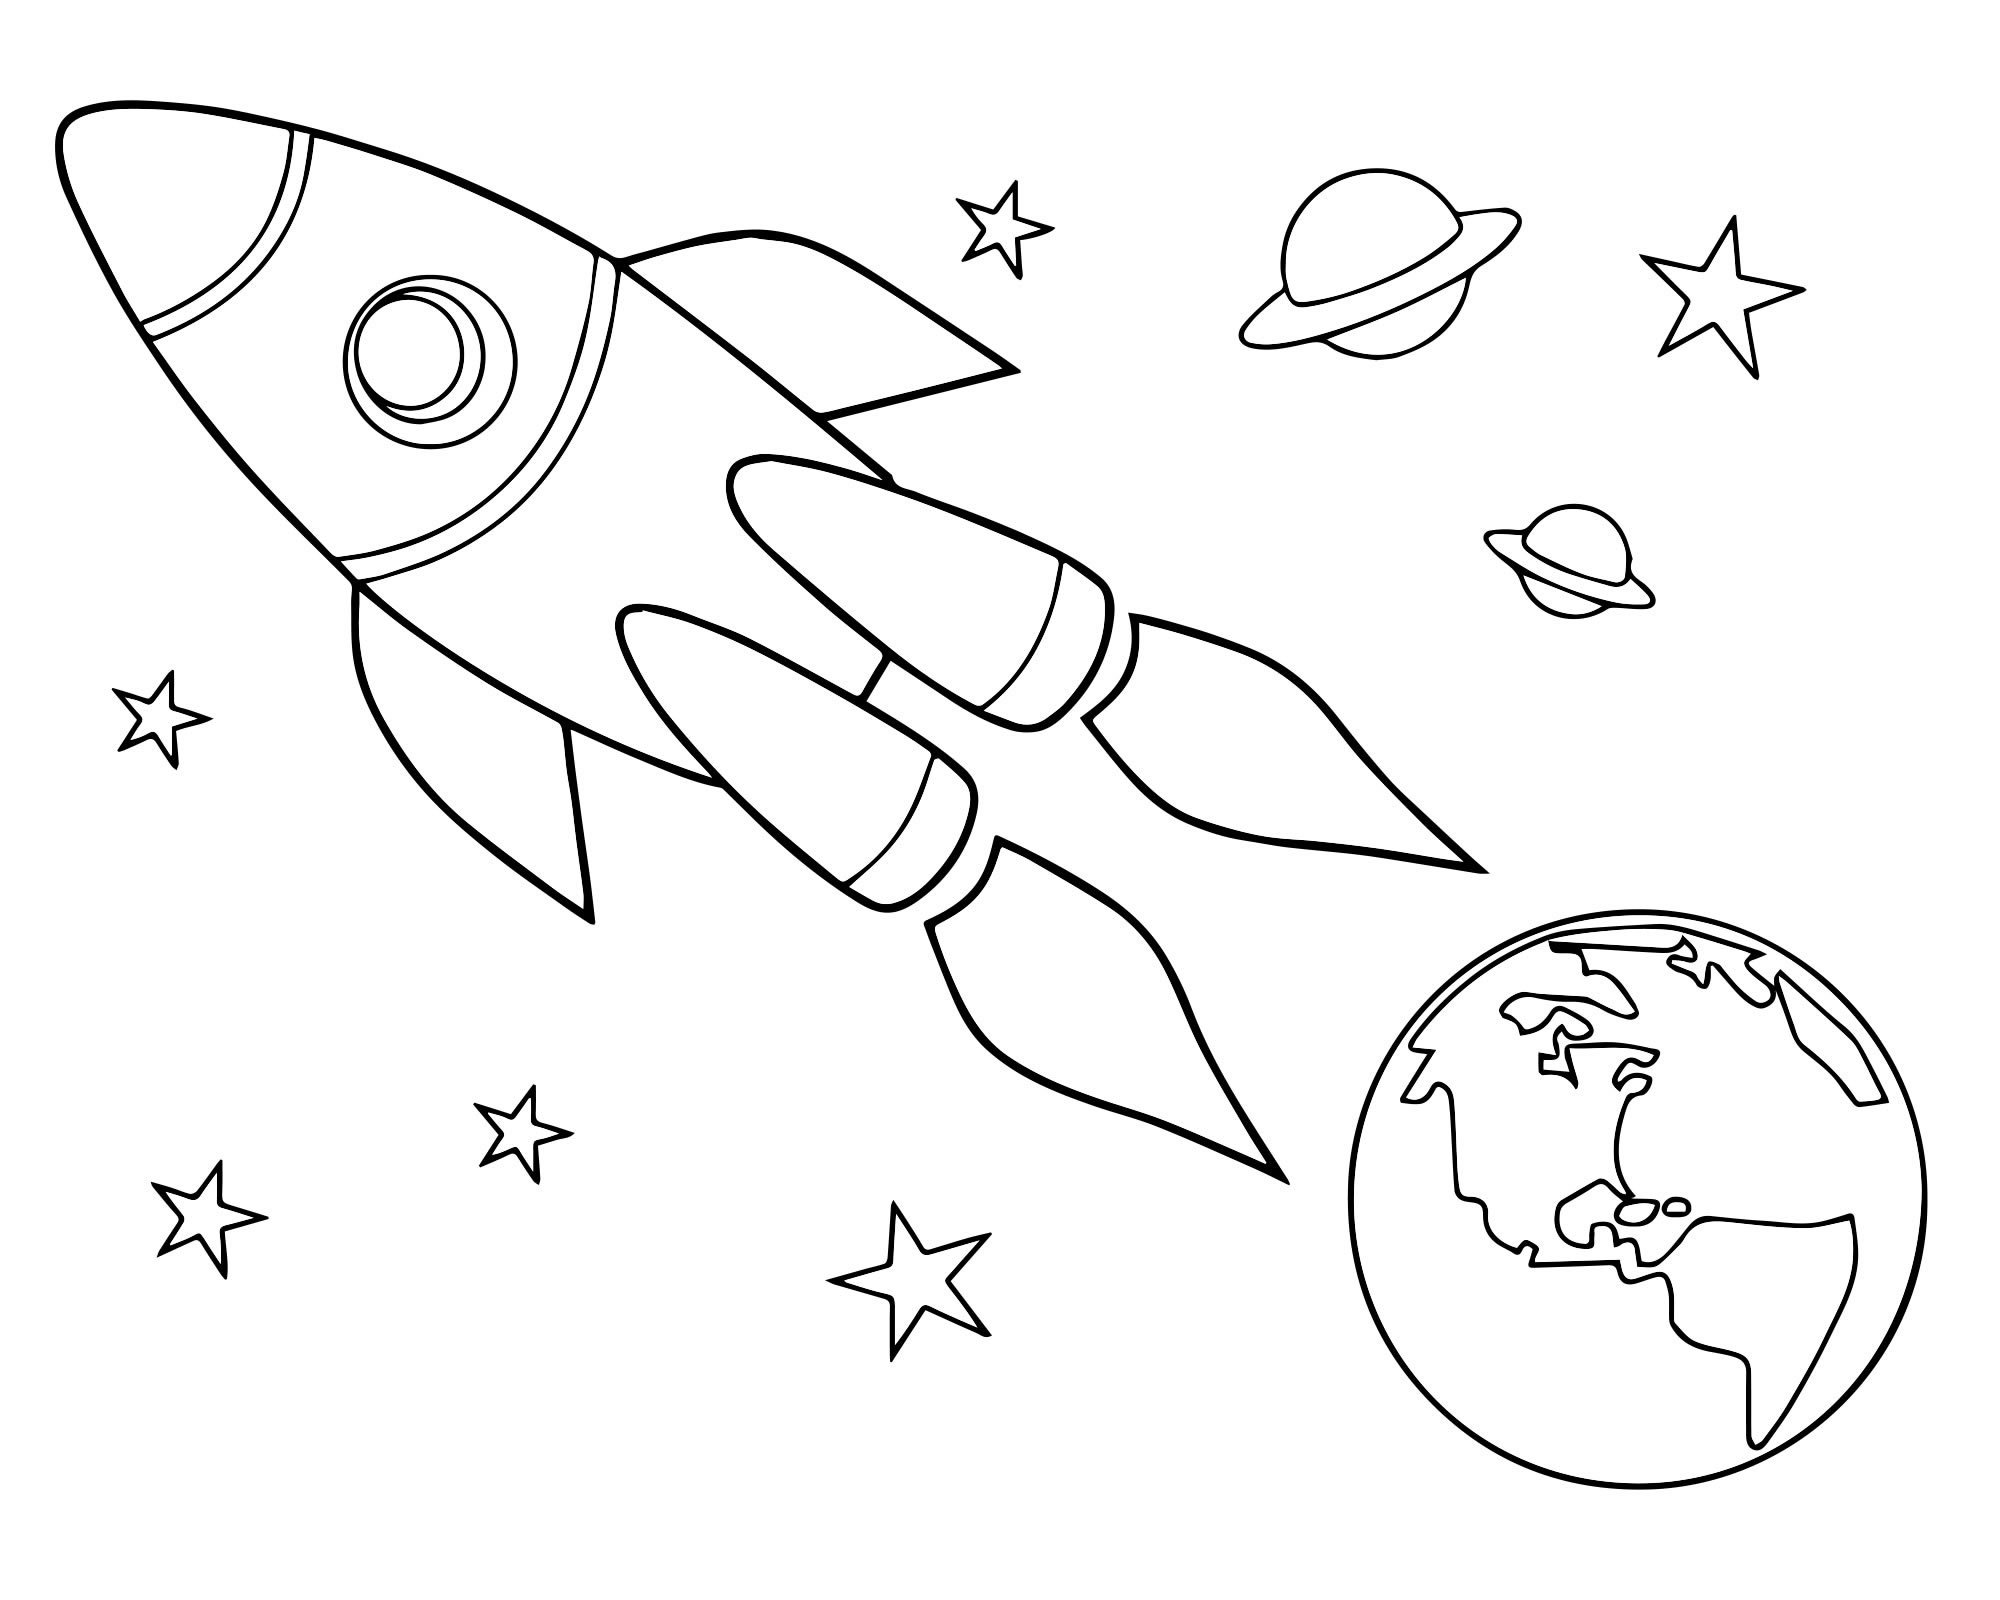 Рисунок на день космонавтики раскраска. Космос раскраска для детей. Раскраска день космонавтики для детей. Трафареты на тему космоса для детей. Раскраска для малышей. Космос.